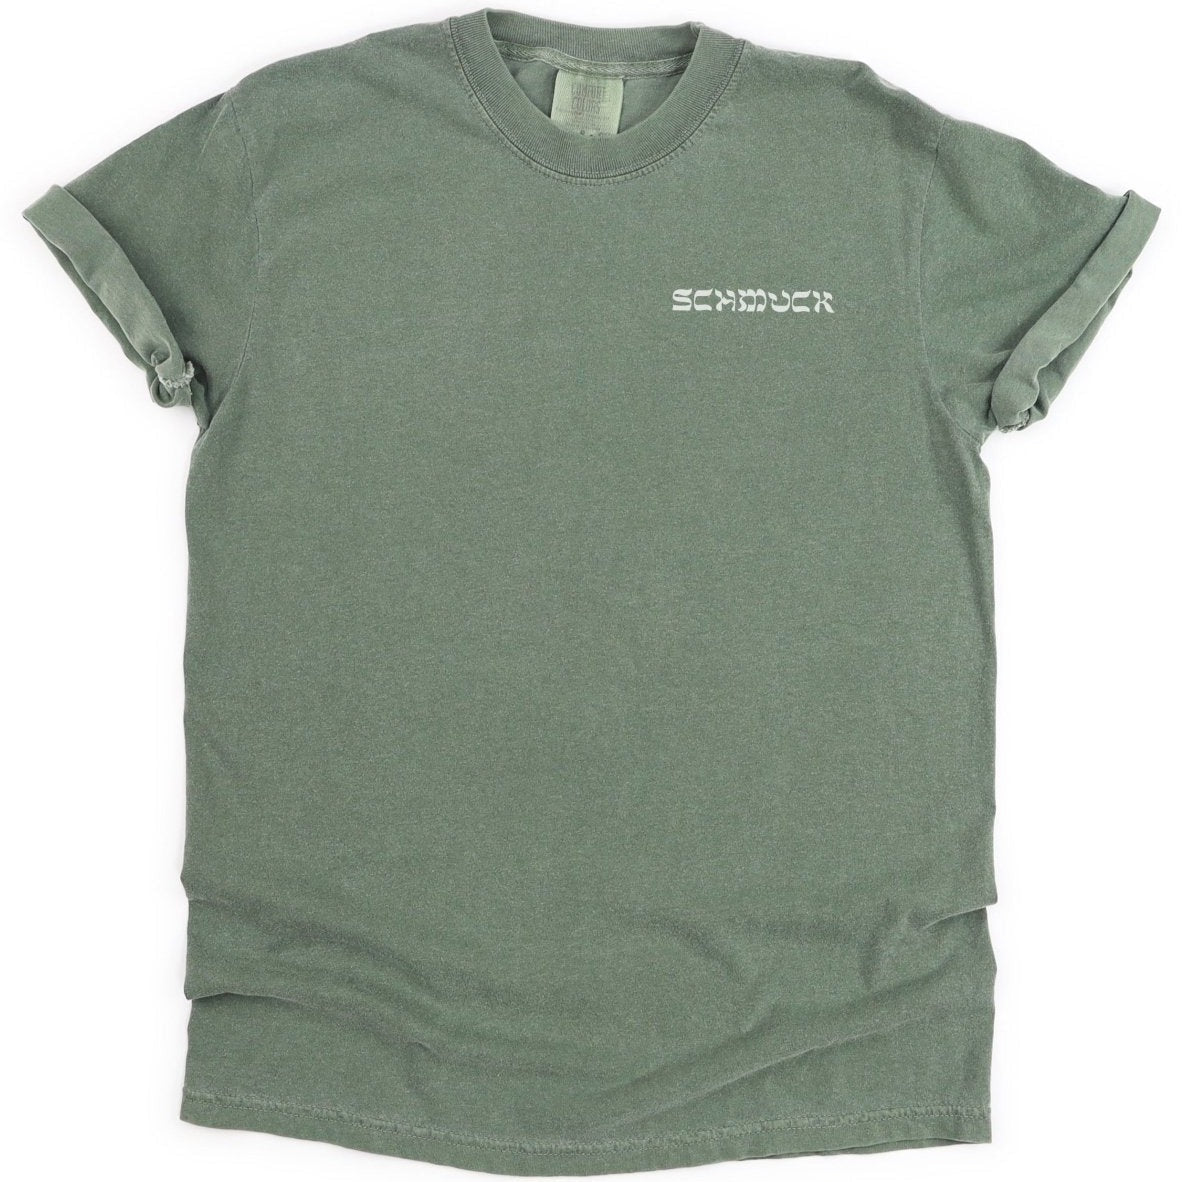 'Schmuck' T-Shirt - T-Shirts - Meshugge